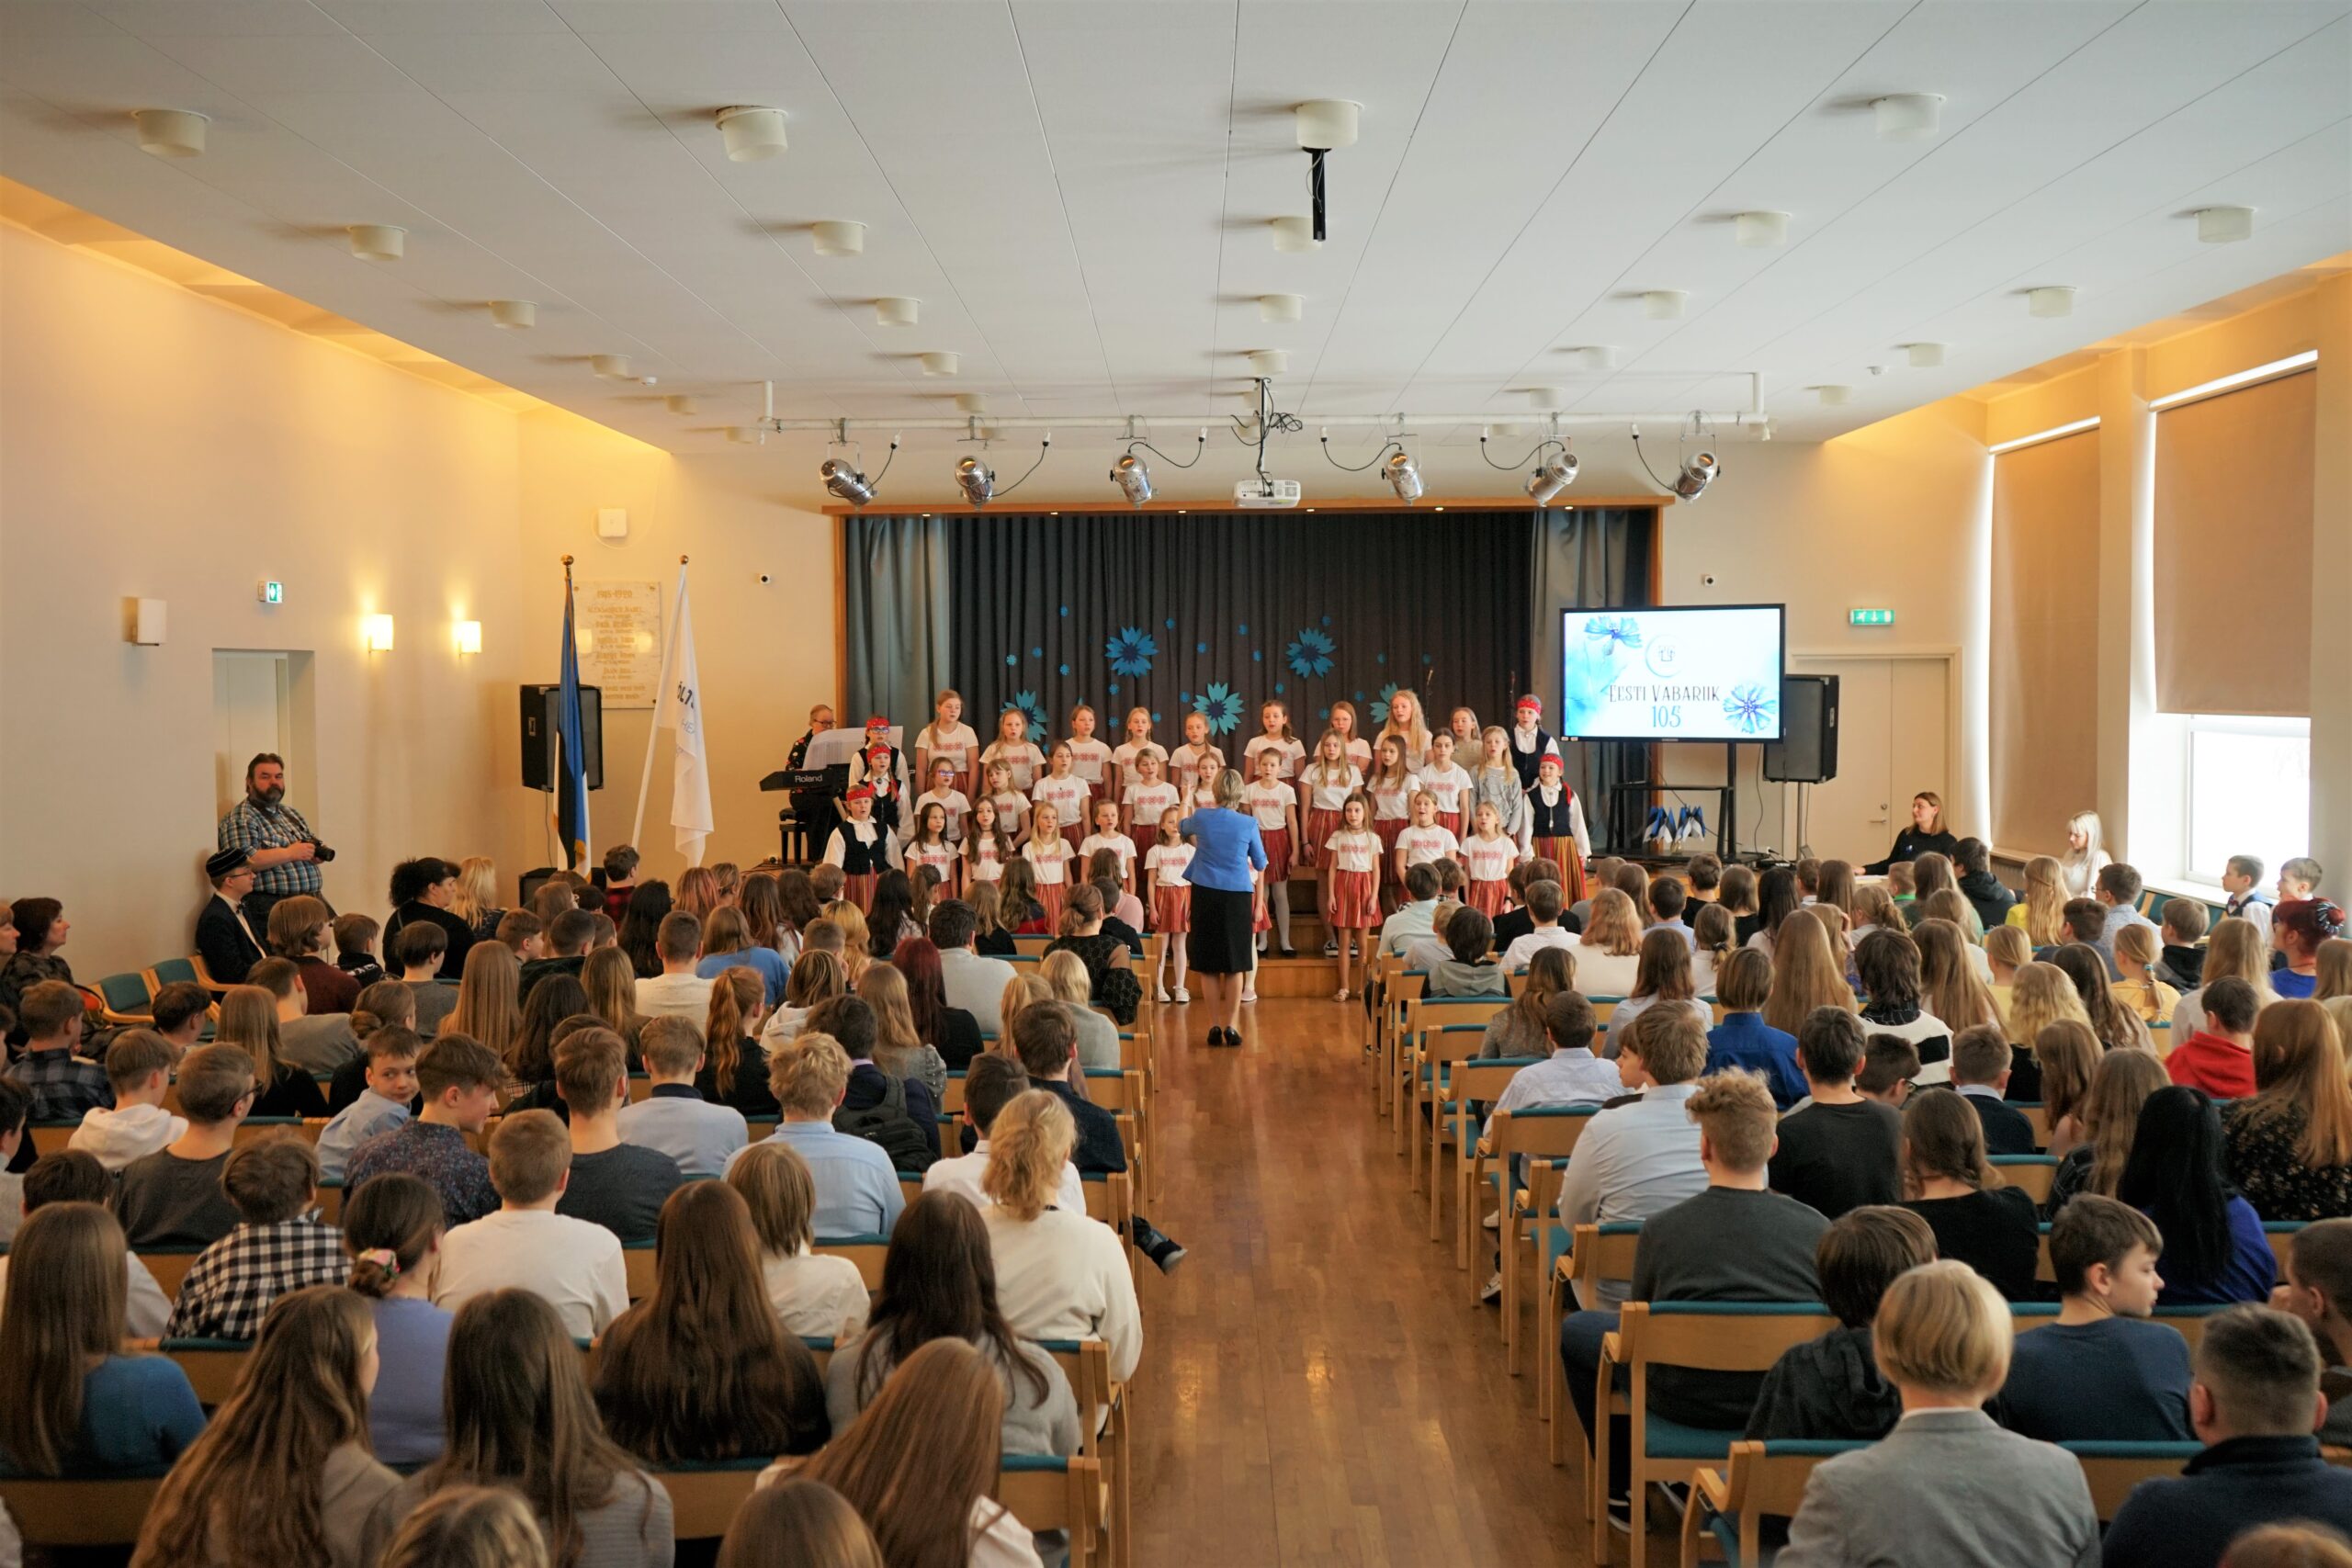 Akutsel kõlasid õpilaste esituses kaunid eestikeelsed laulud. Foto Iris Pook.